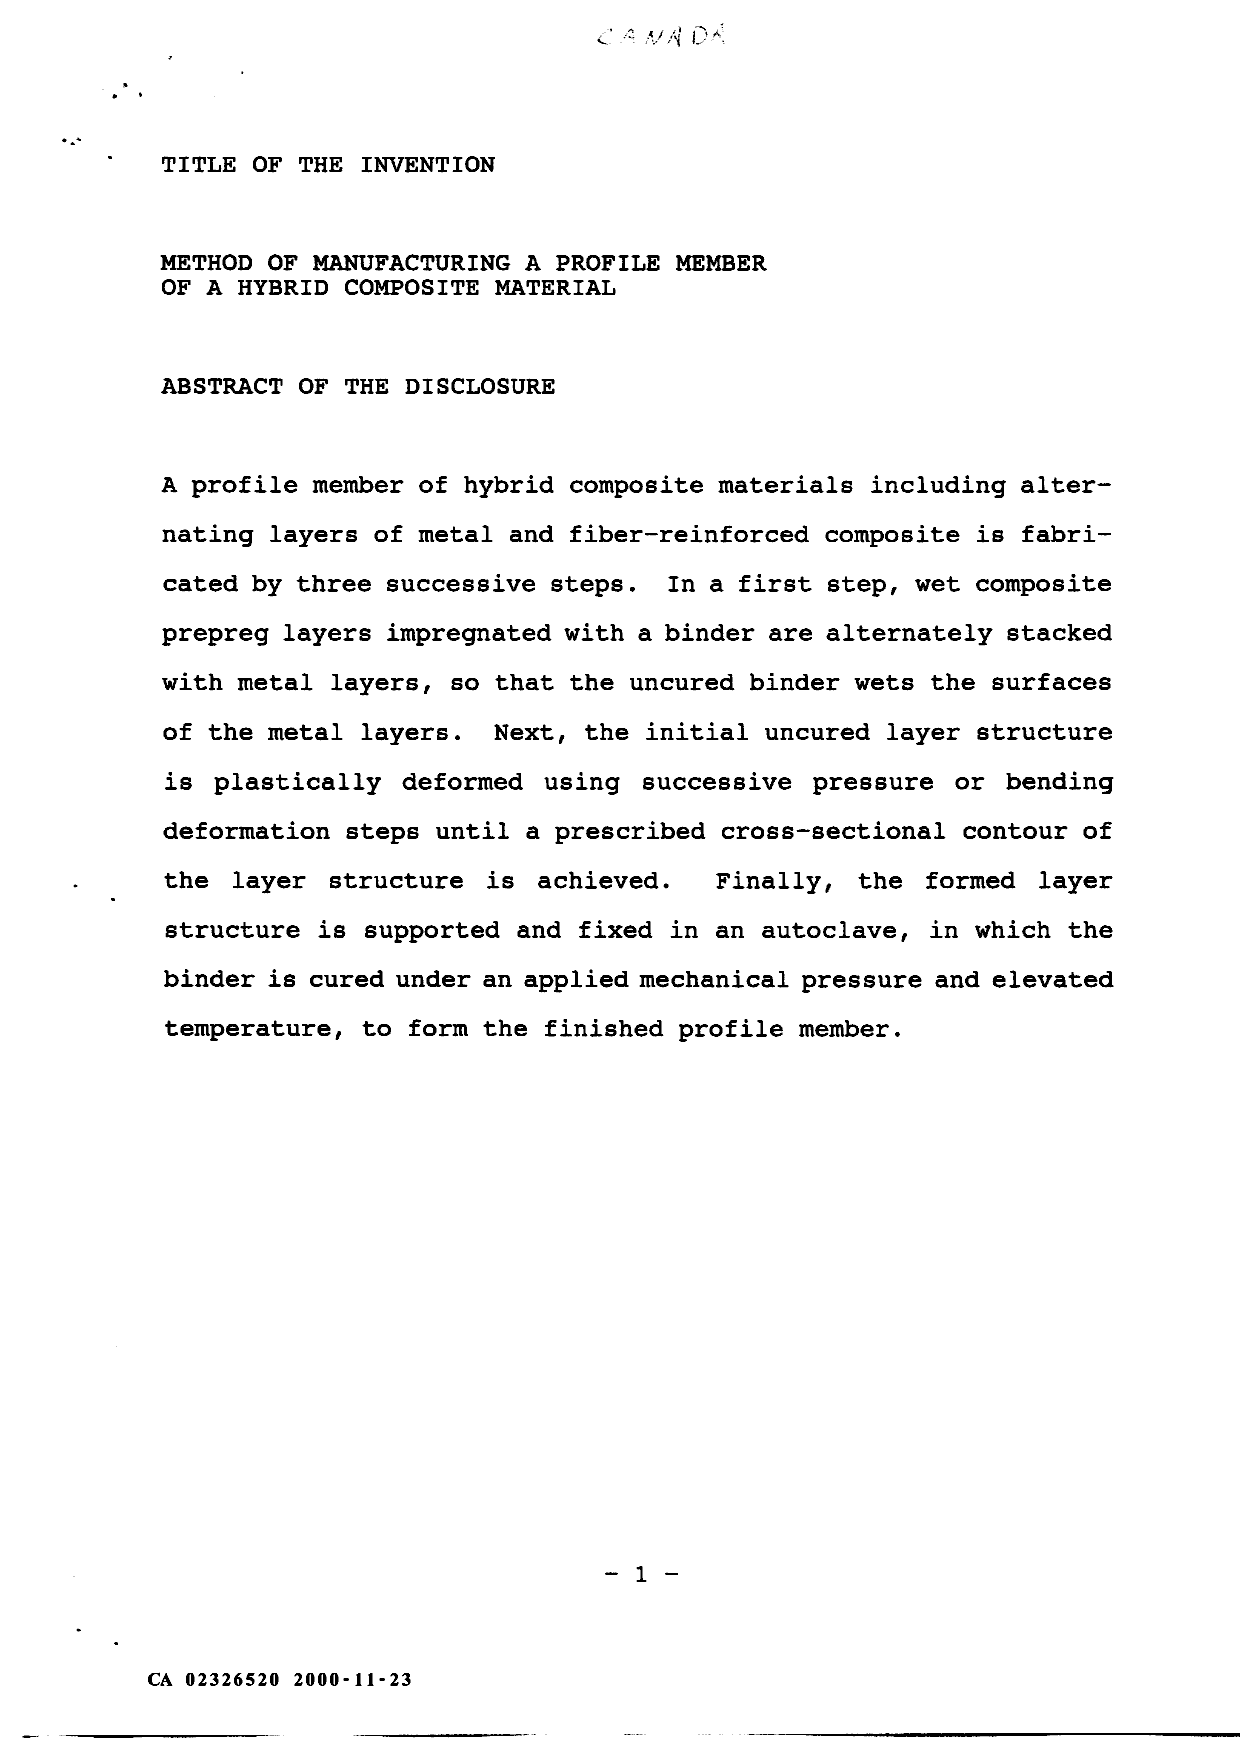 Document de brevet canadien 2326520. Abrégé 20001123. Image 1 de 1